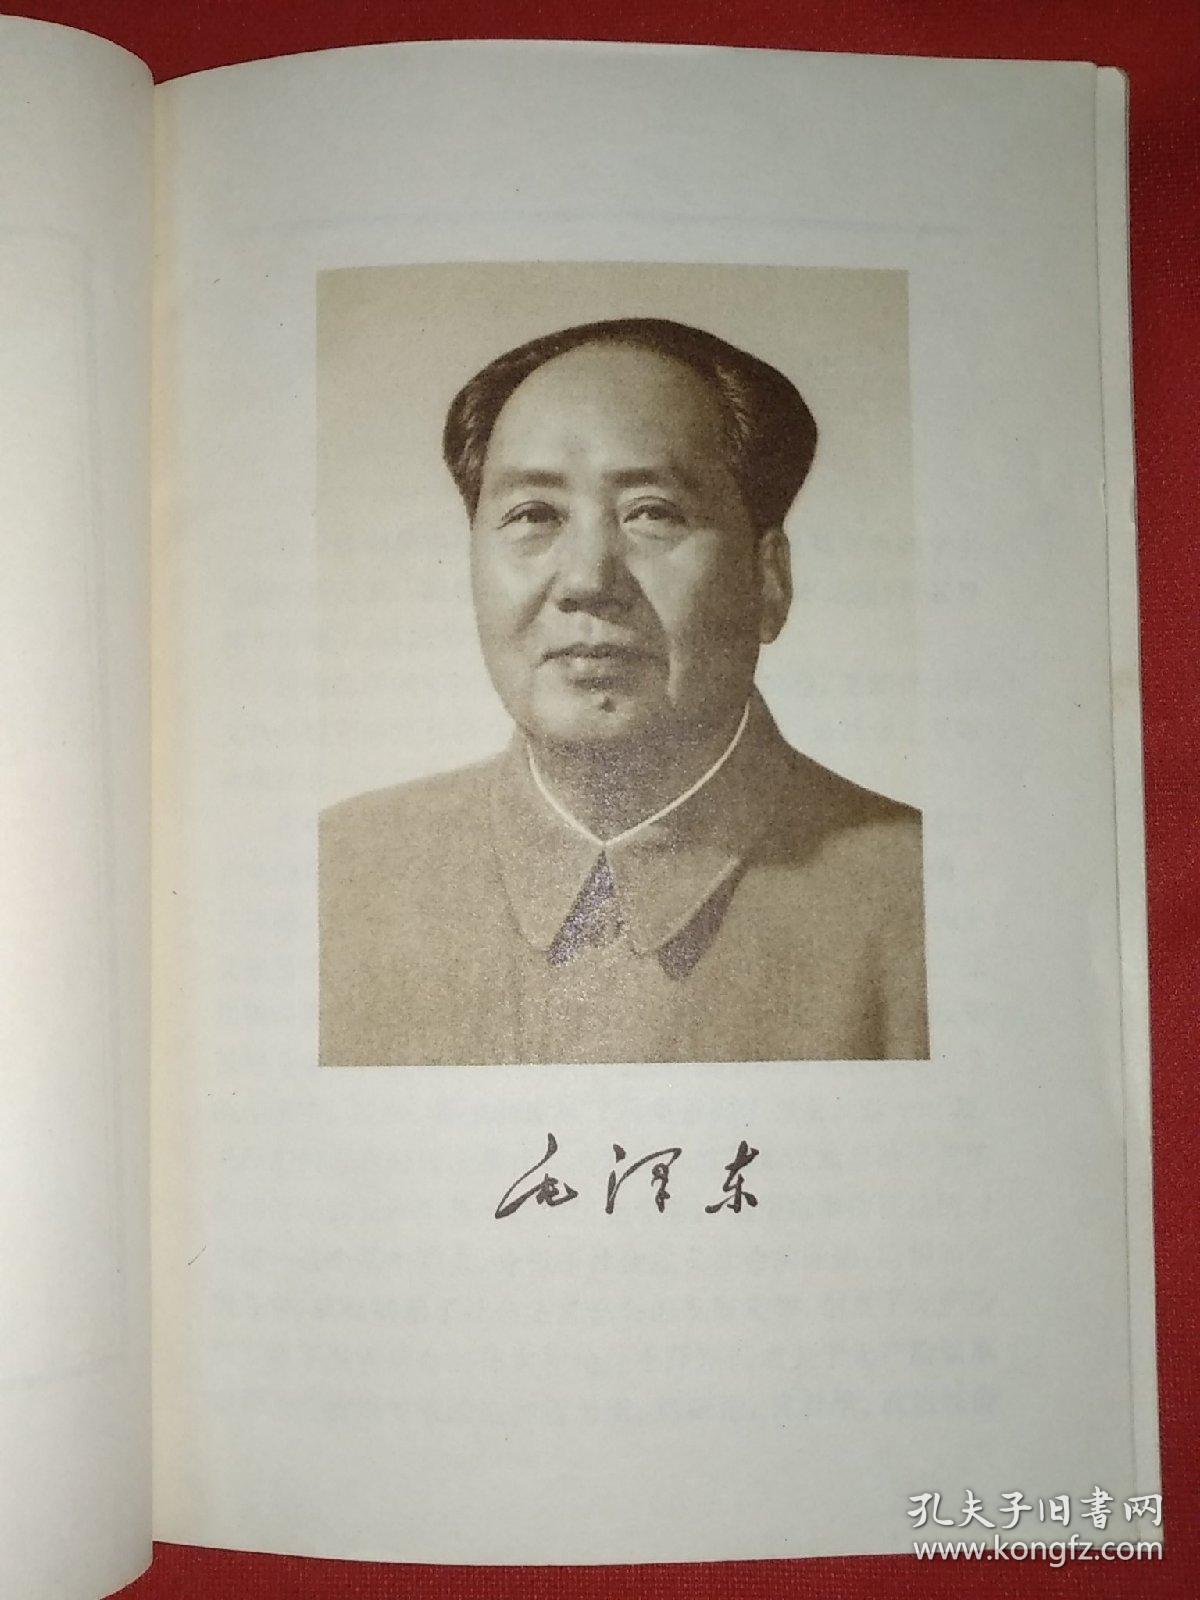 毛泽东选集第五卷（221号）